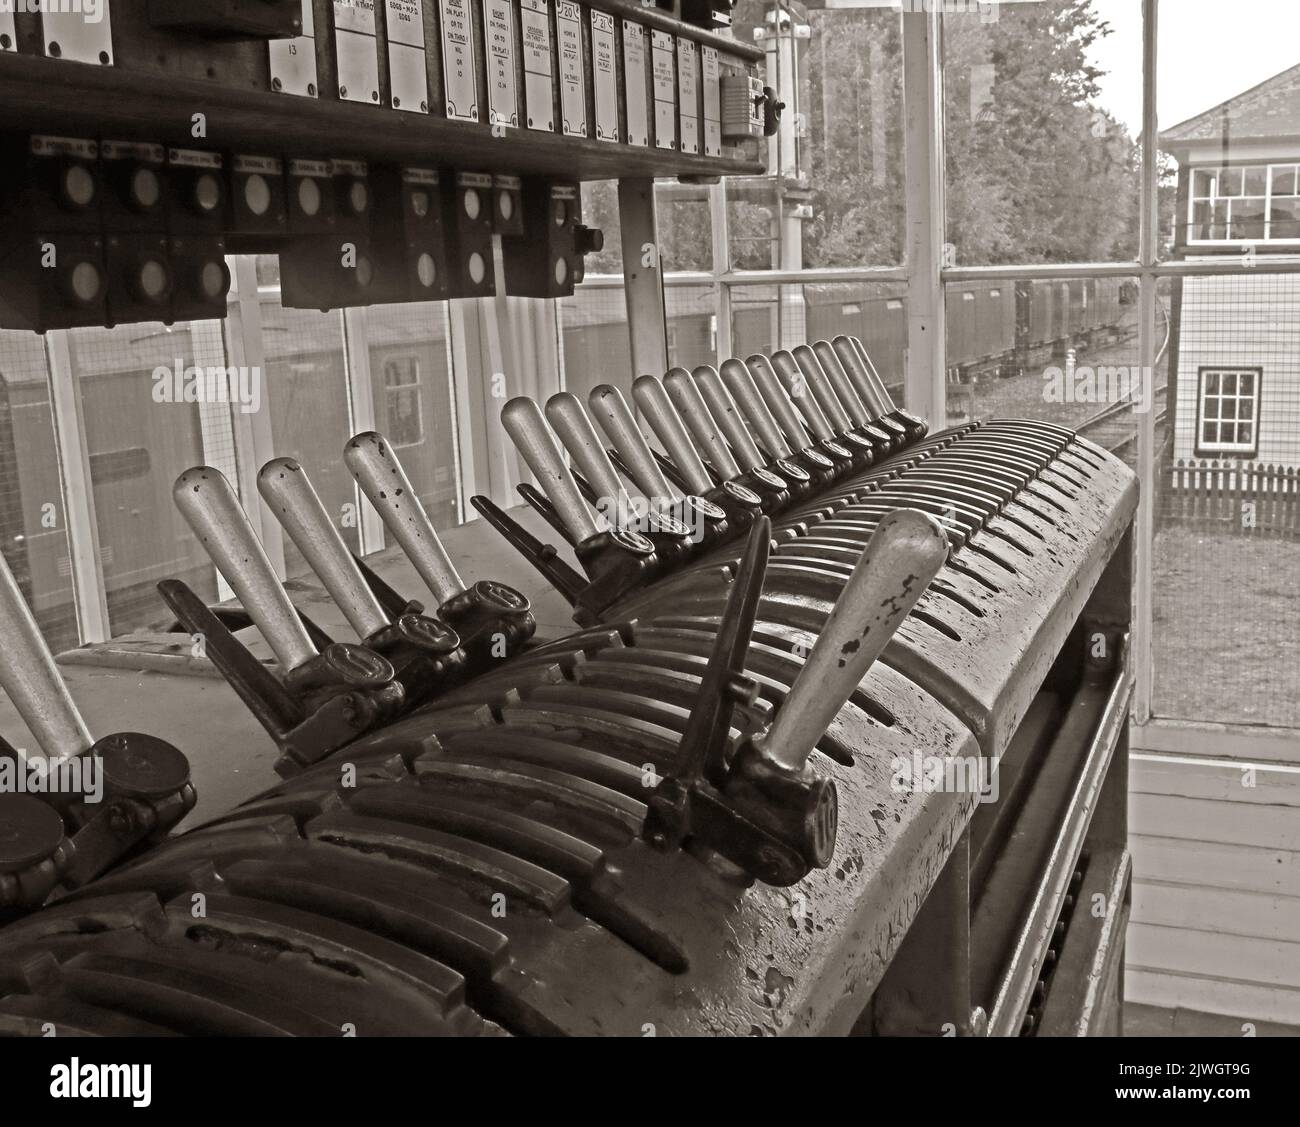 Immagine a seppia delle leve e del telaio della scatola di segnalazione elettrica, Crewe, Cheshire, Inghilterra, Regno Unito, CW1 2DB Foto Stock